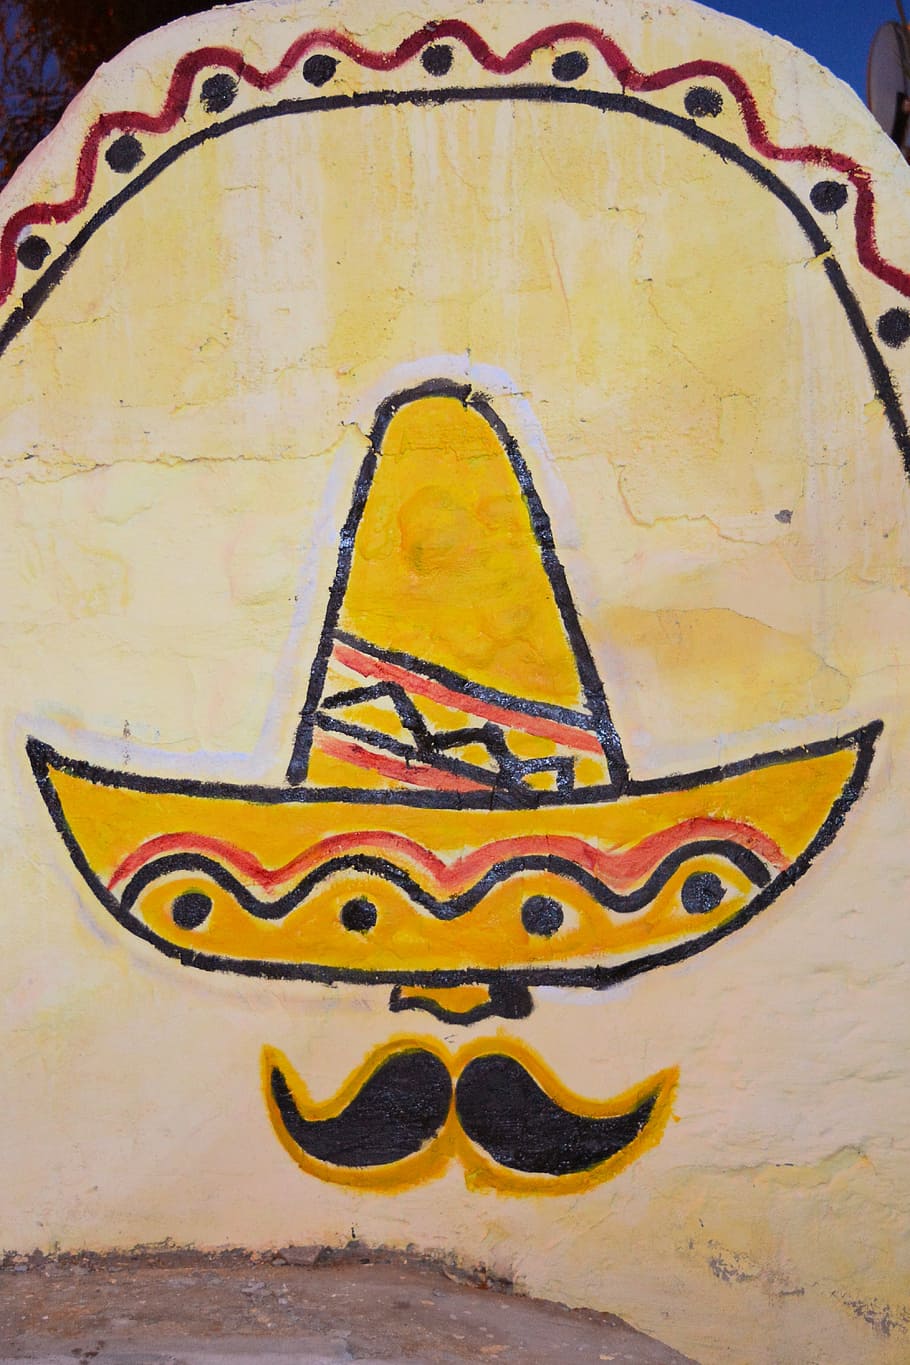 pintura, mural, azteca, mexicano, colorante, amarillo, razón, arte, arte y artesanía, creatividad